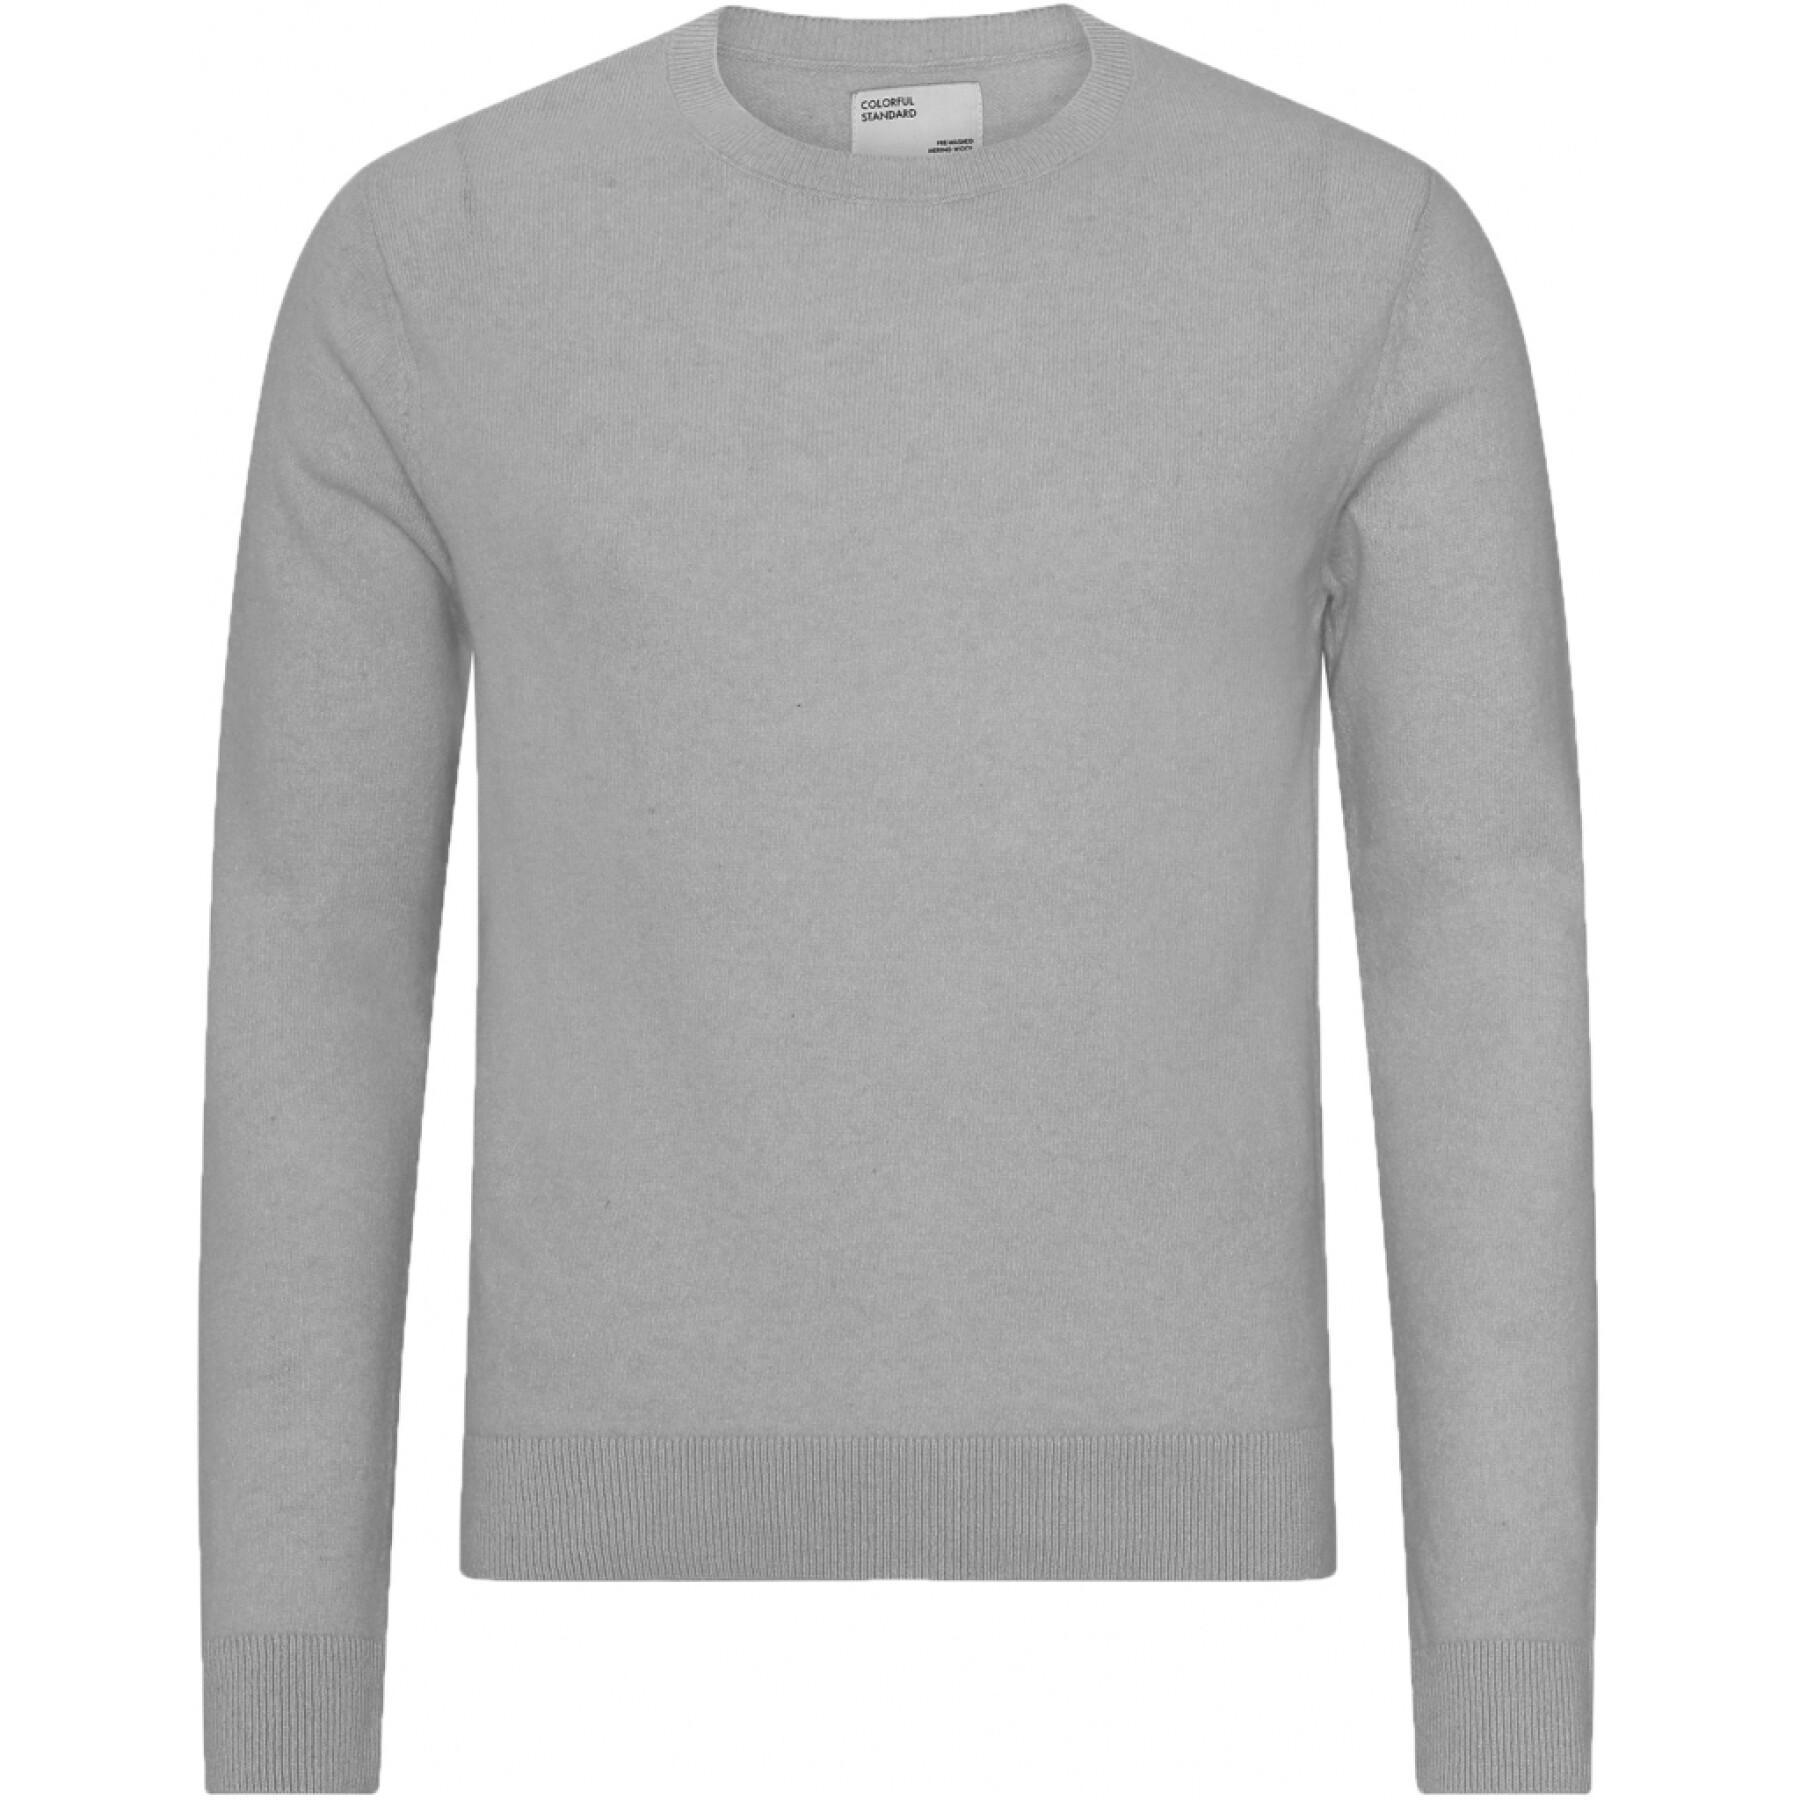 Maglione a girocollo in lana Colorful Standard Light Merino heather grey 2020 color